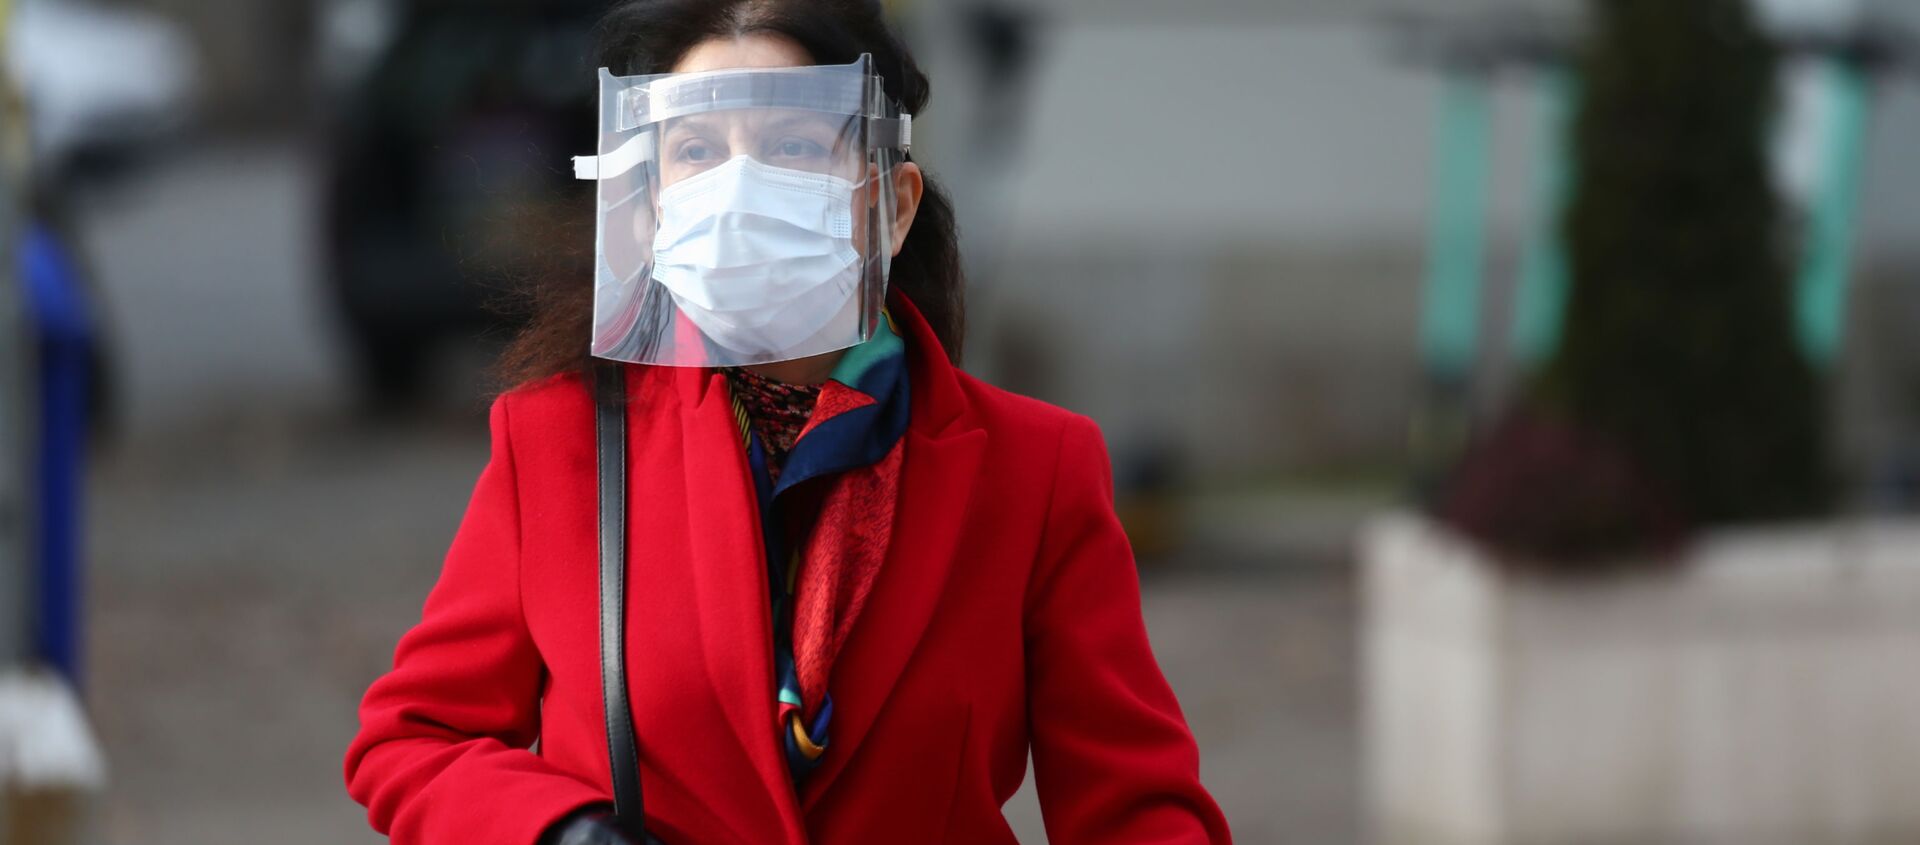 Эпидемия коронавируса - женщина в маске и лицевом щитке идет по улице - Sputnik Грузия, 1920, 04.02.2021